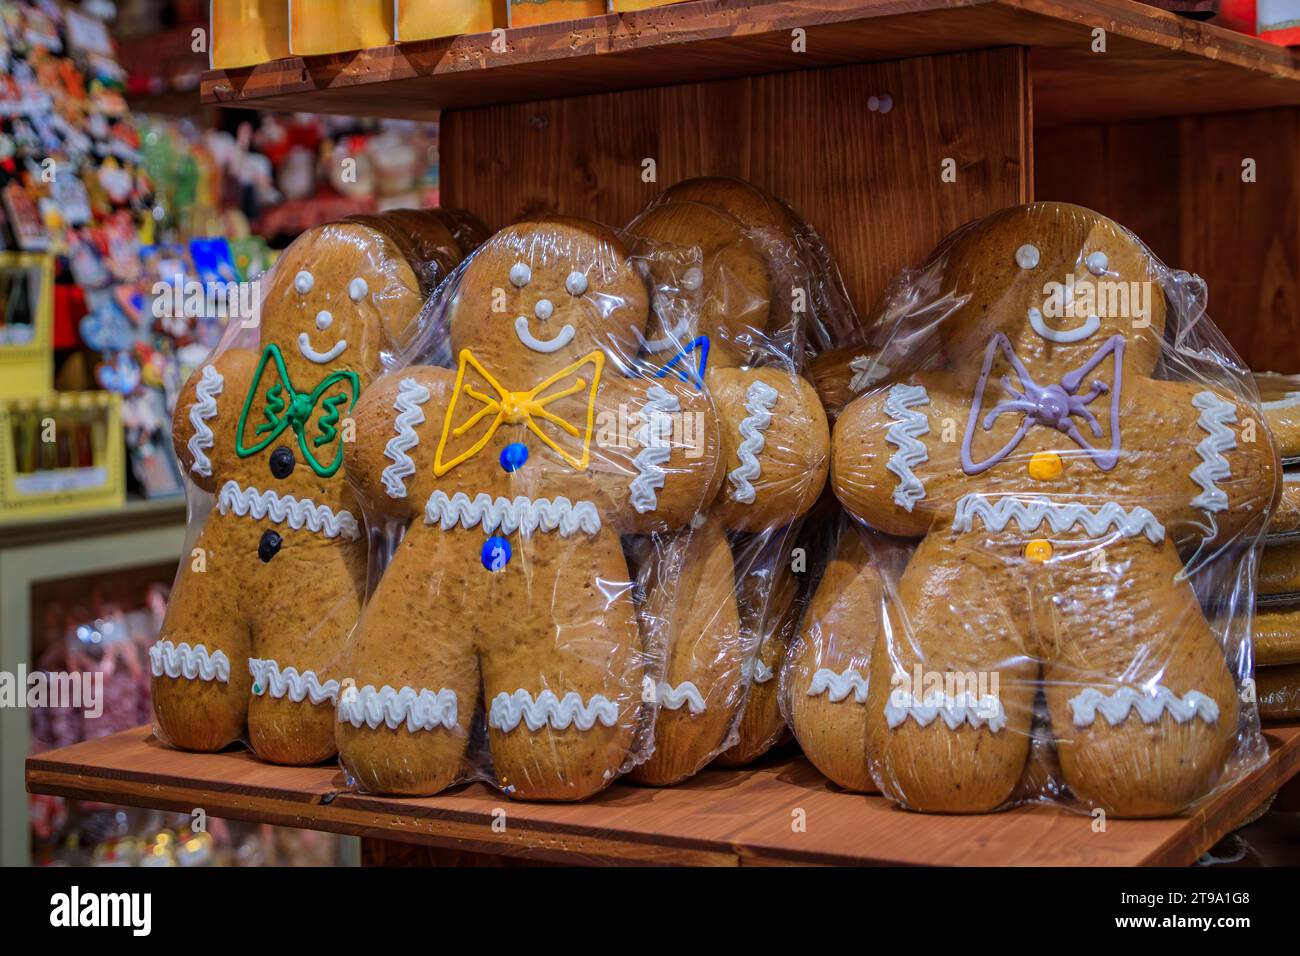 Galletas artesanales artesanales tradicionales alsacianas de pan de jengibre hombre de vacaciones en exhibición en una tienda en el casco antiguo de la ciudad de Colmar, Francia Foto de stock